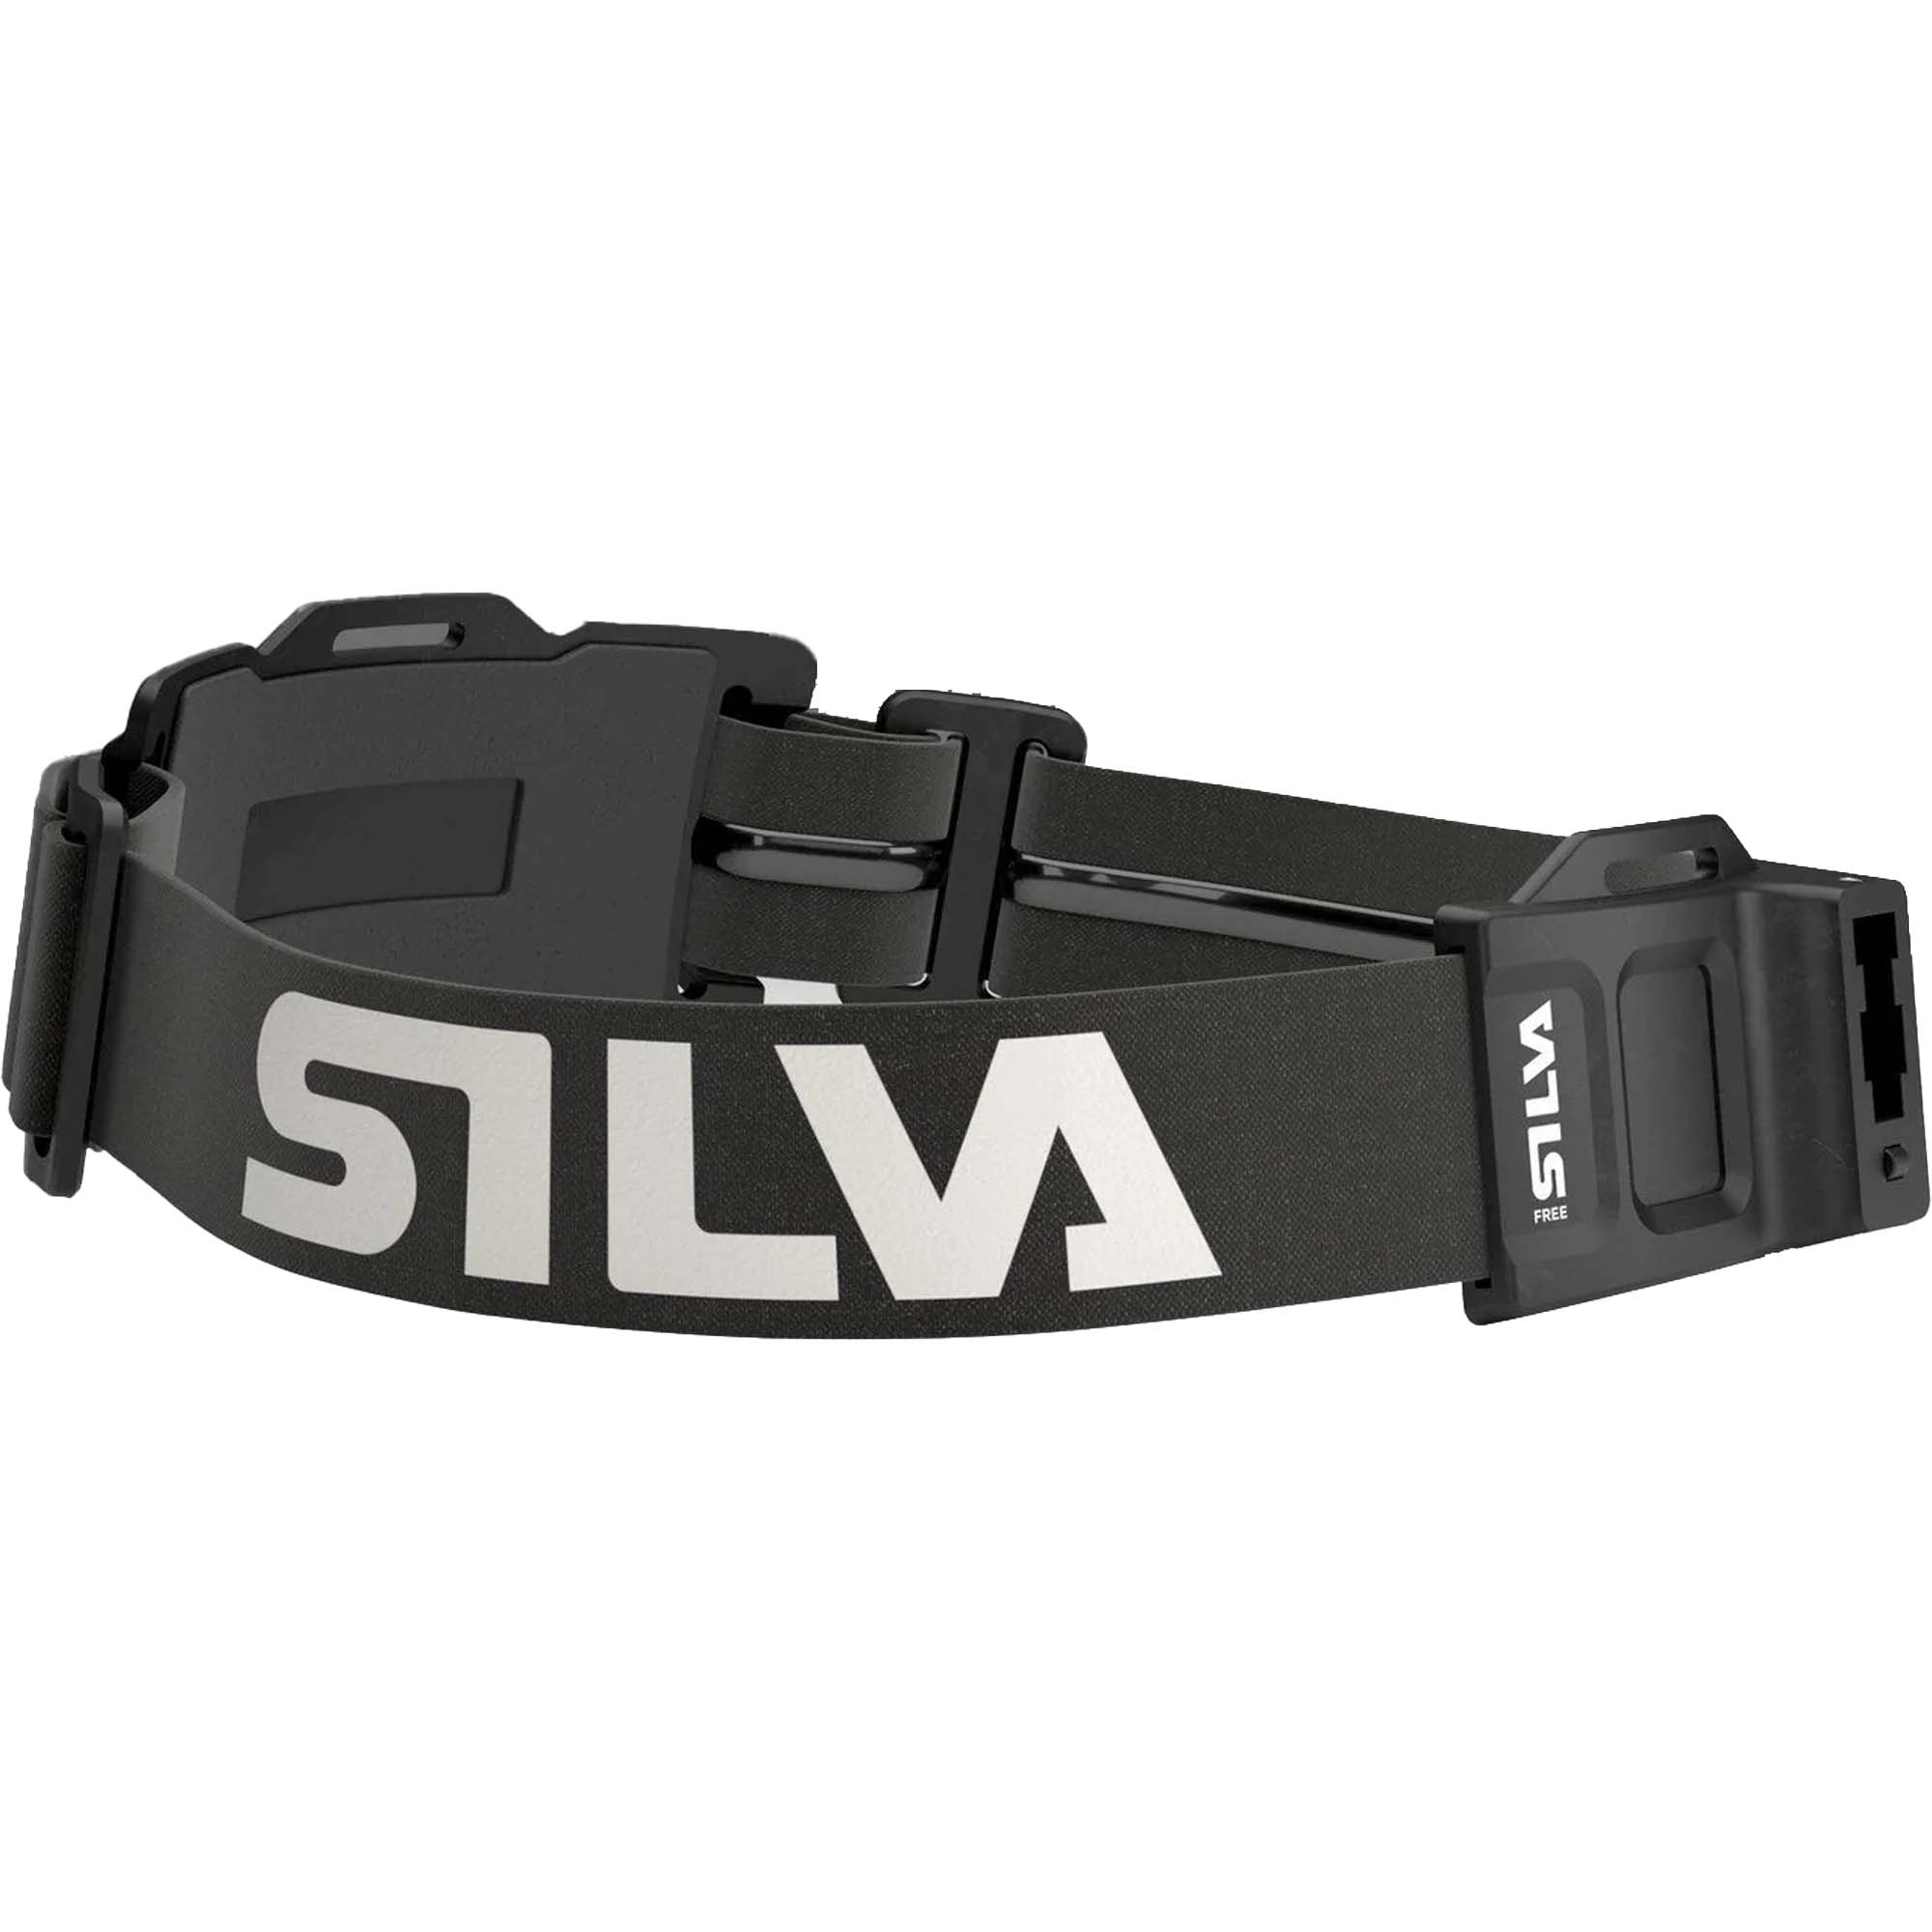 SILVA Free Running Headset